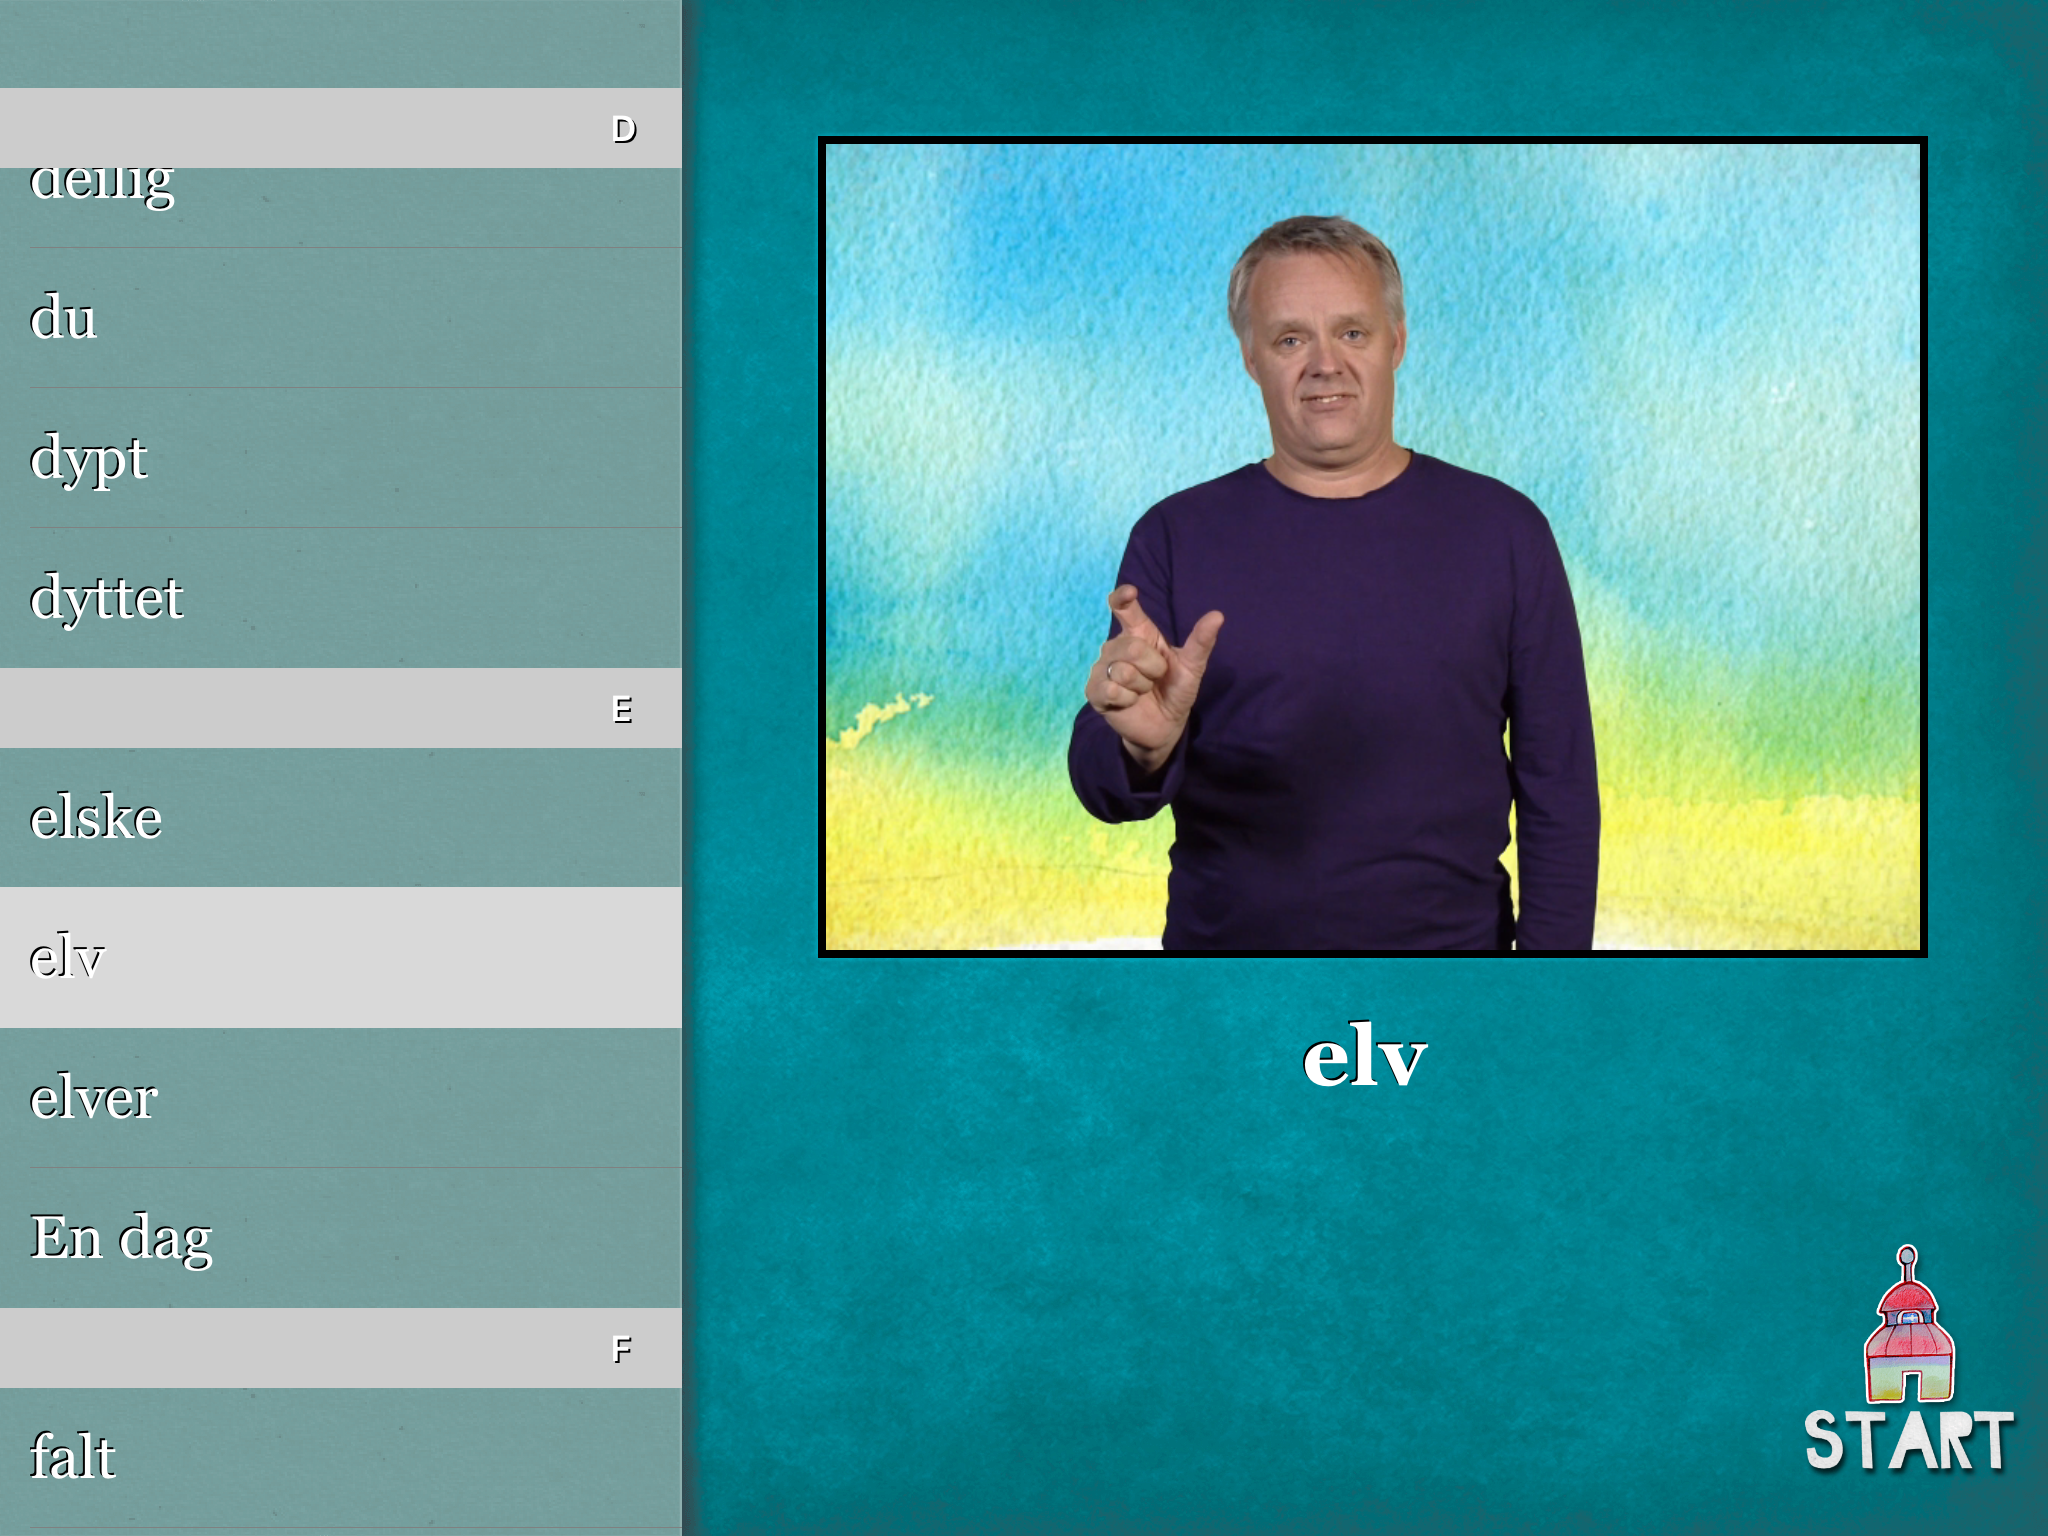 Mann som viser begrepet elv på tegnspråk